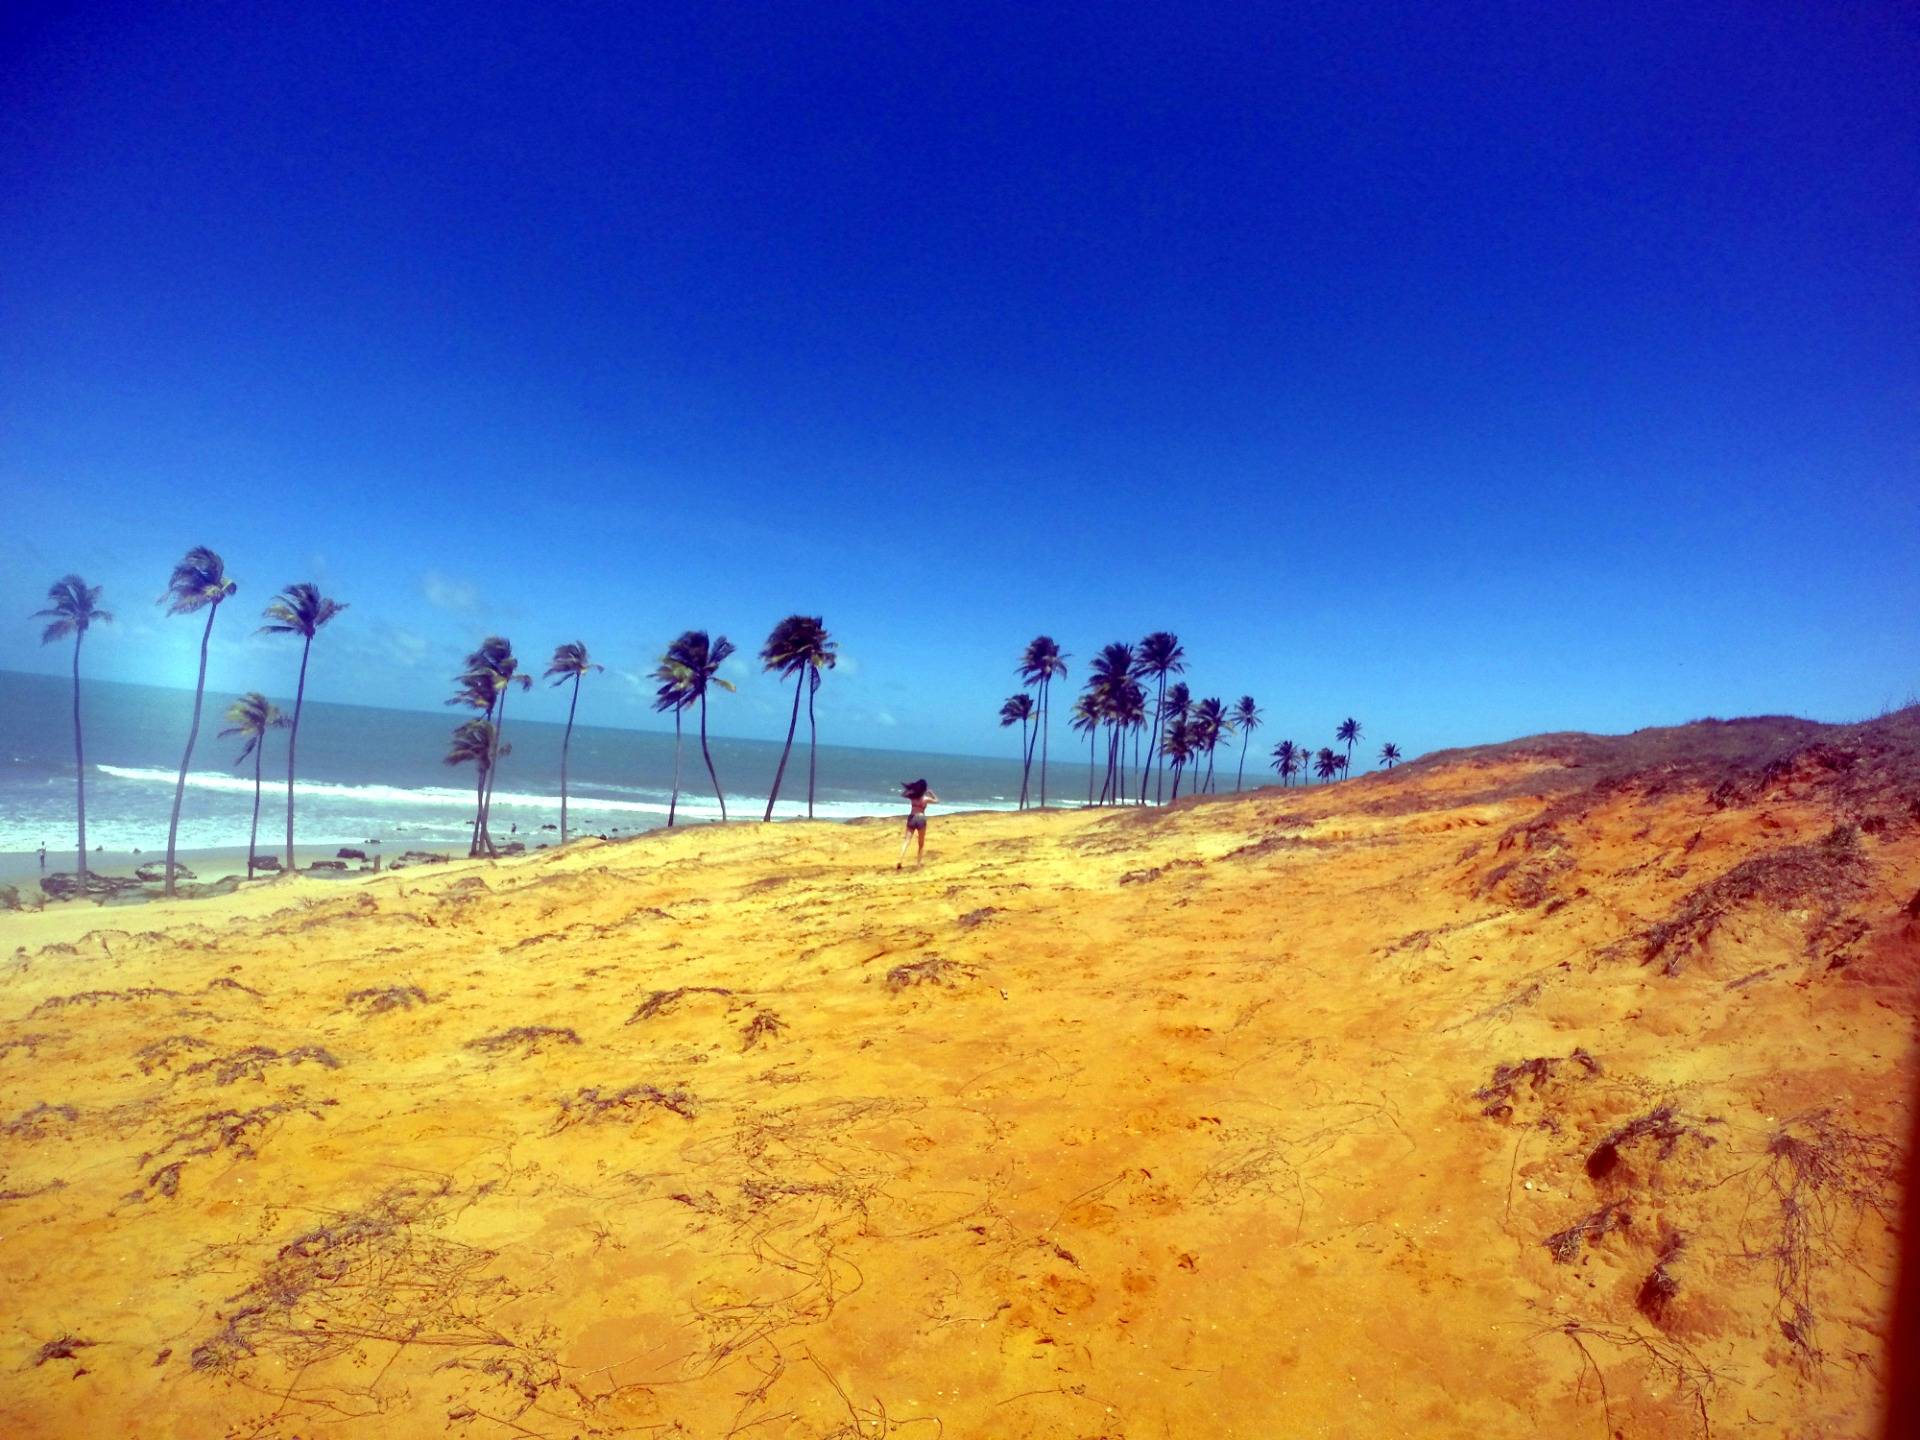 Ceará Coast | Where the desert meets the ocean | Brazil